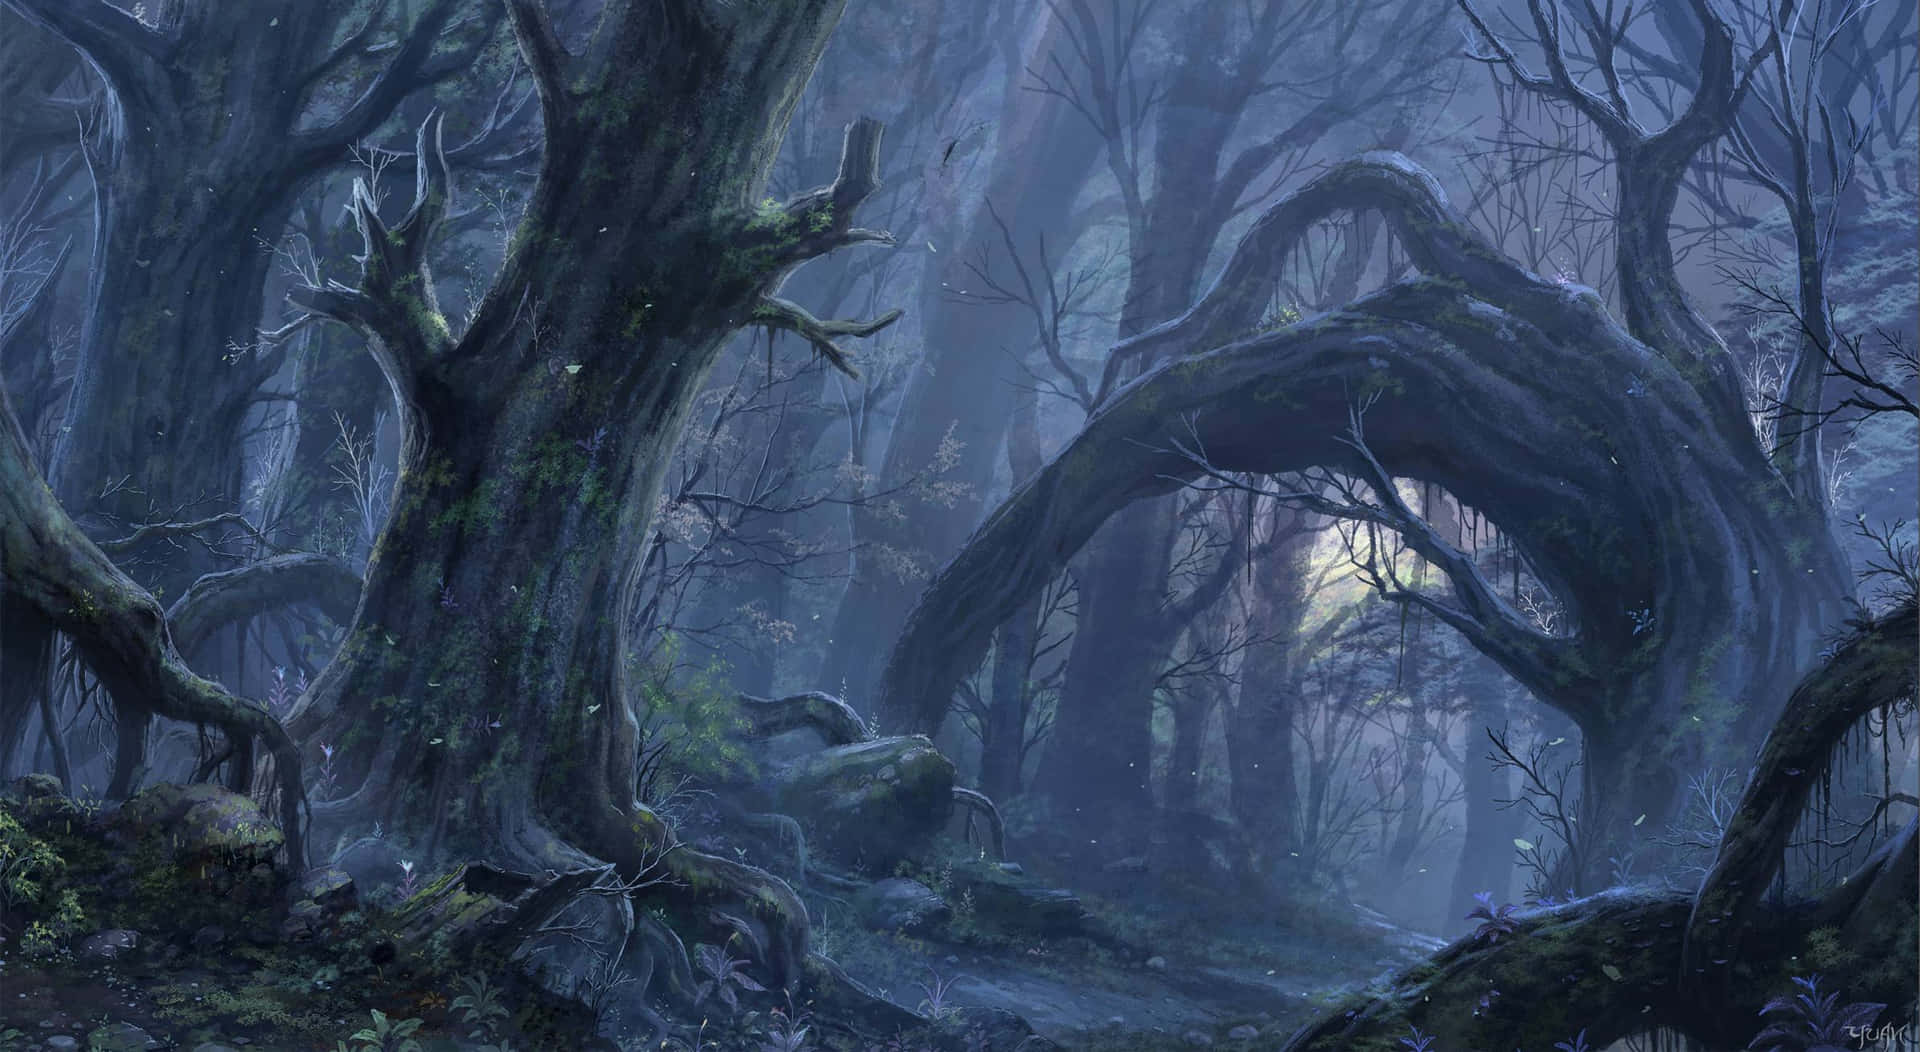 Nebelverhangenewälder Erschaffen Eine Magische Szene.